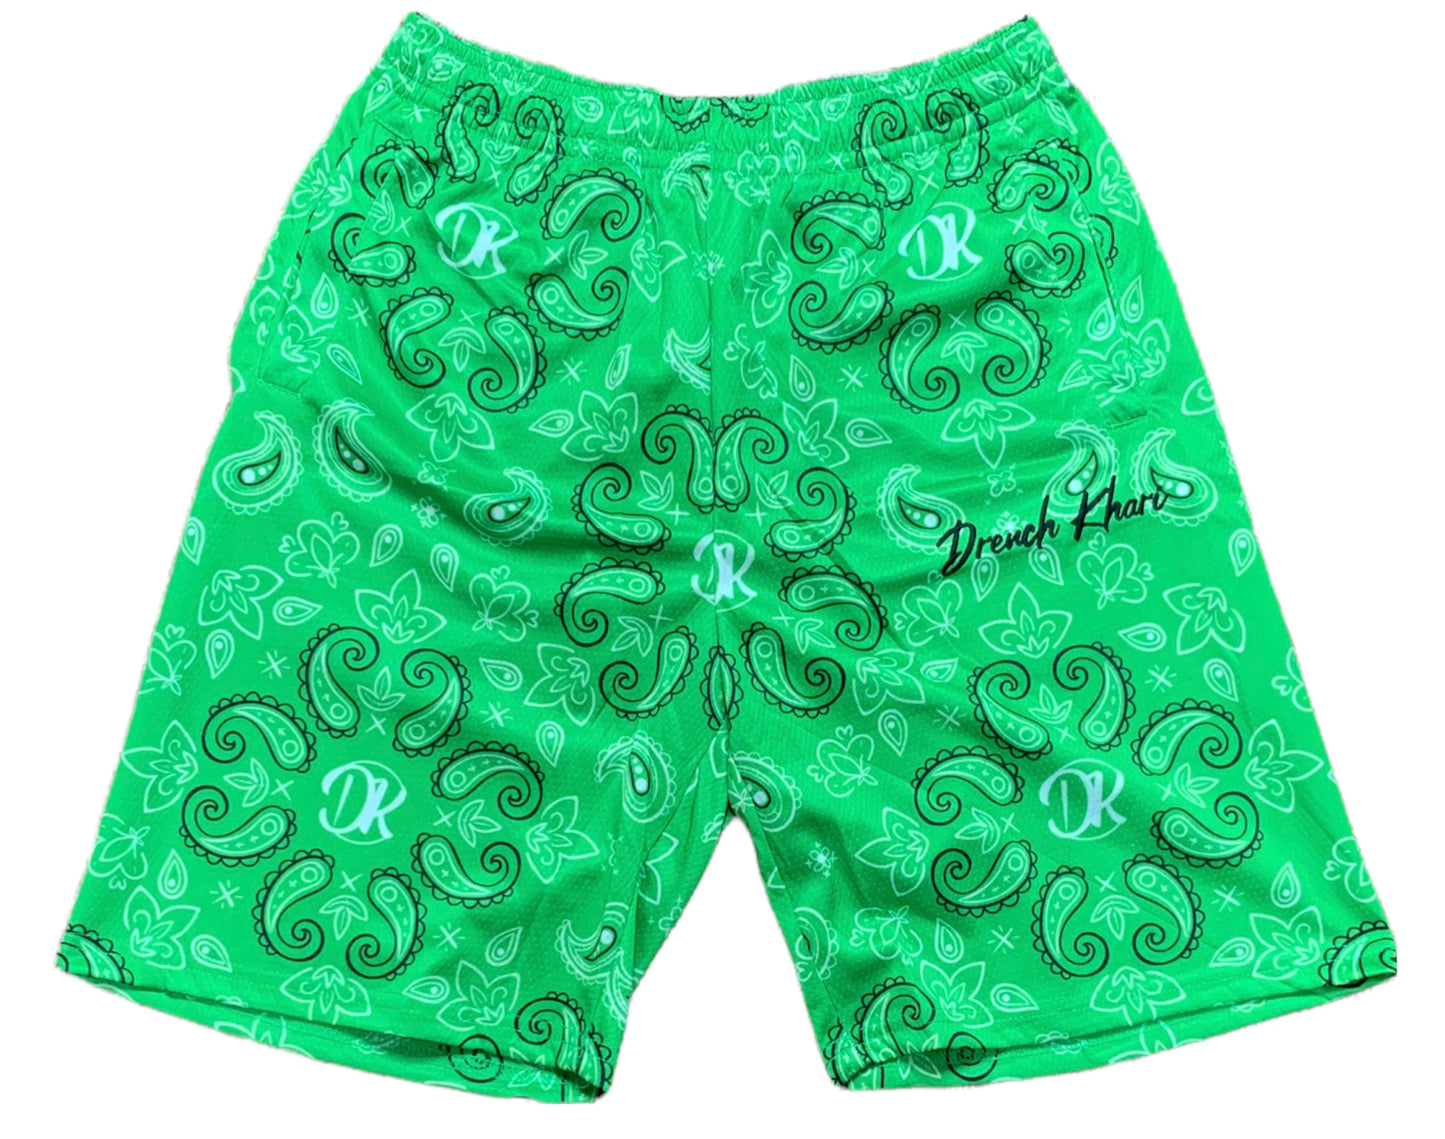 Paisley Green DK Shorts